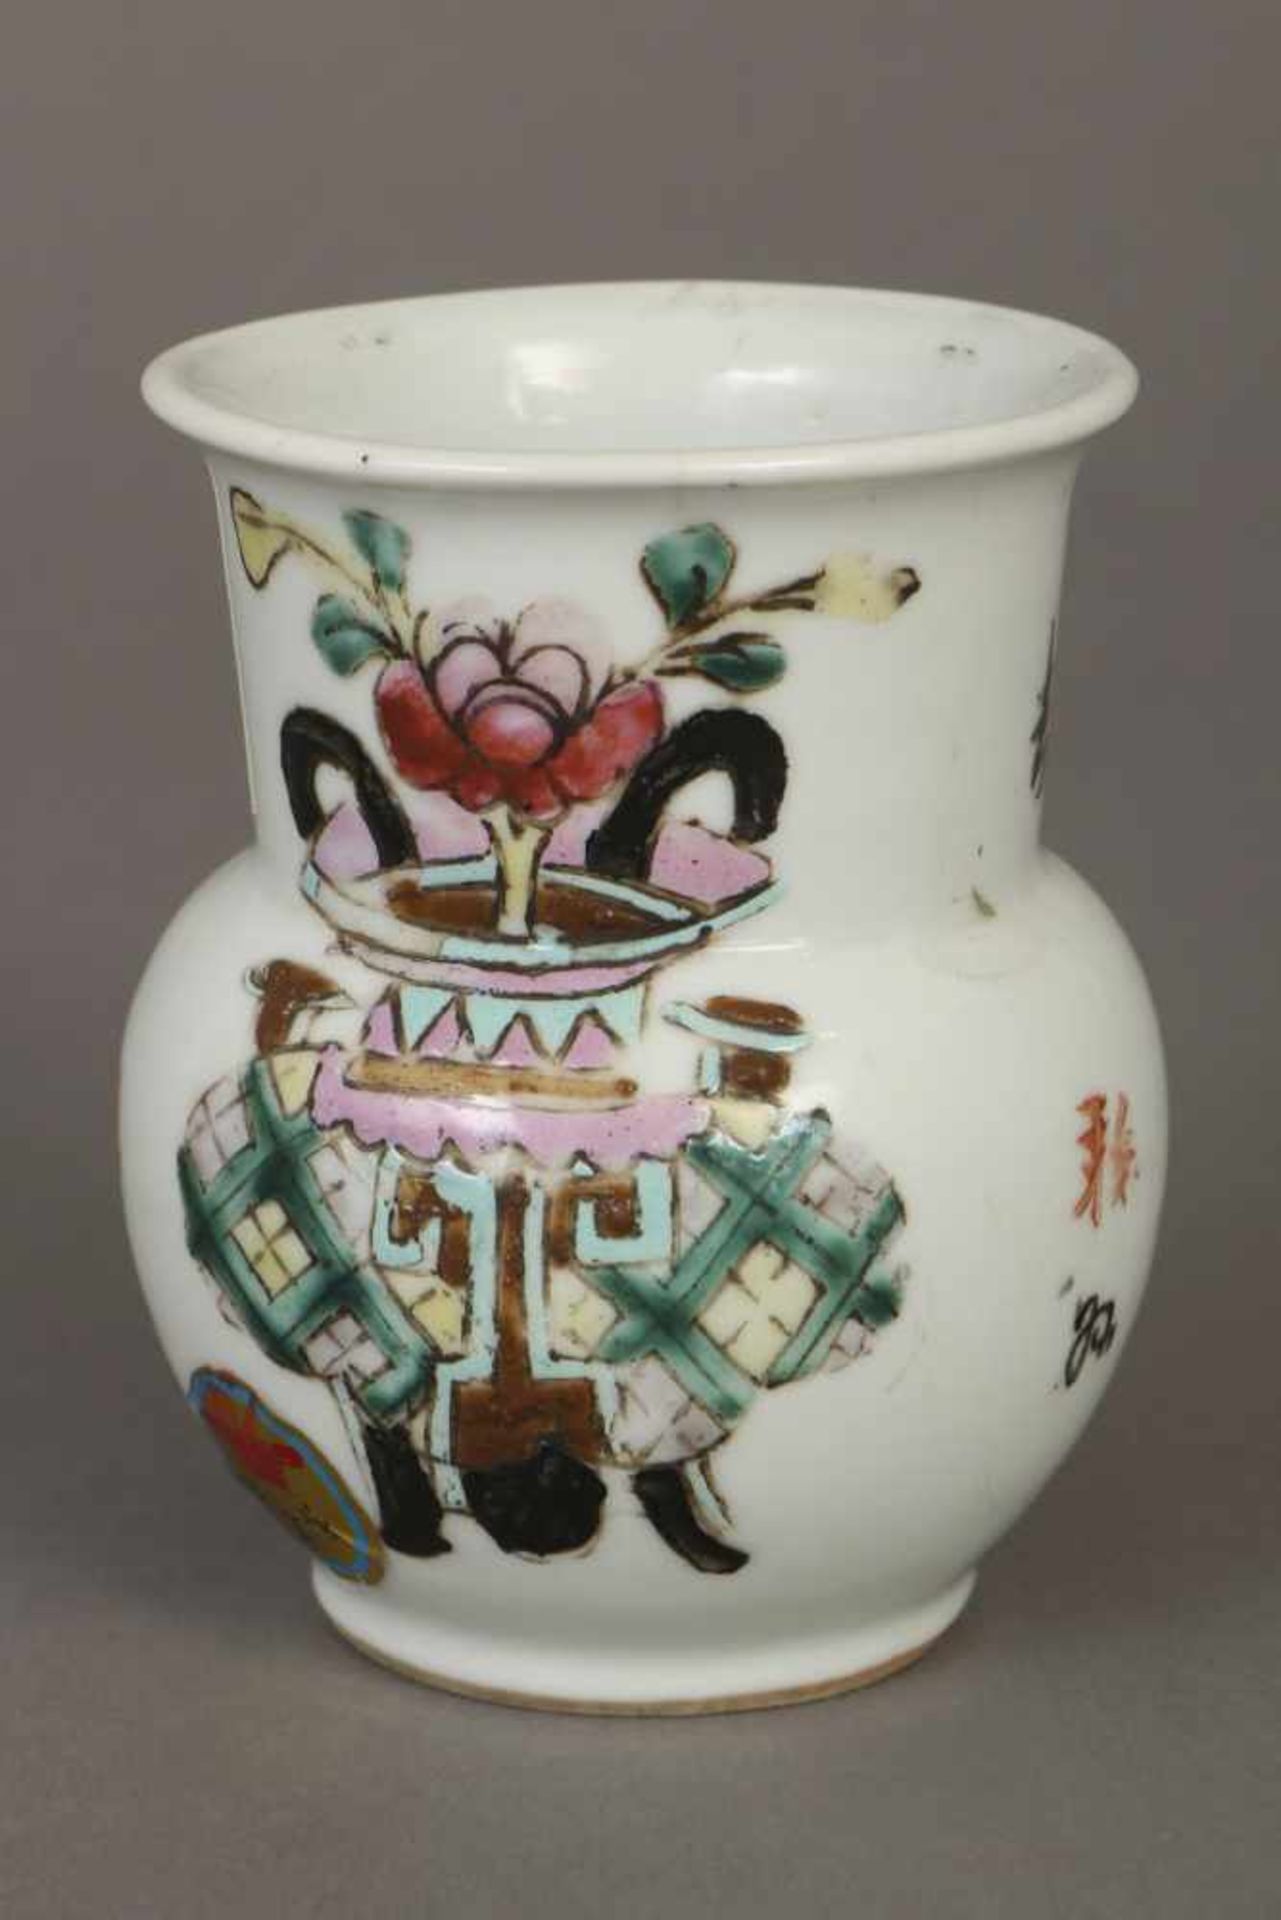 Chinesische Porzellanvasewohl Republikzeit, schau- und rückseitig Vasen- und Floraldekor, am Boden